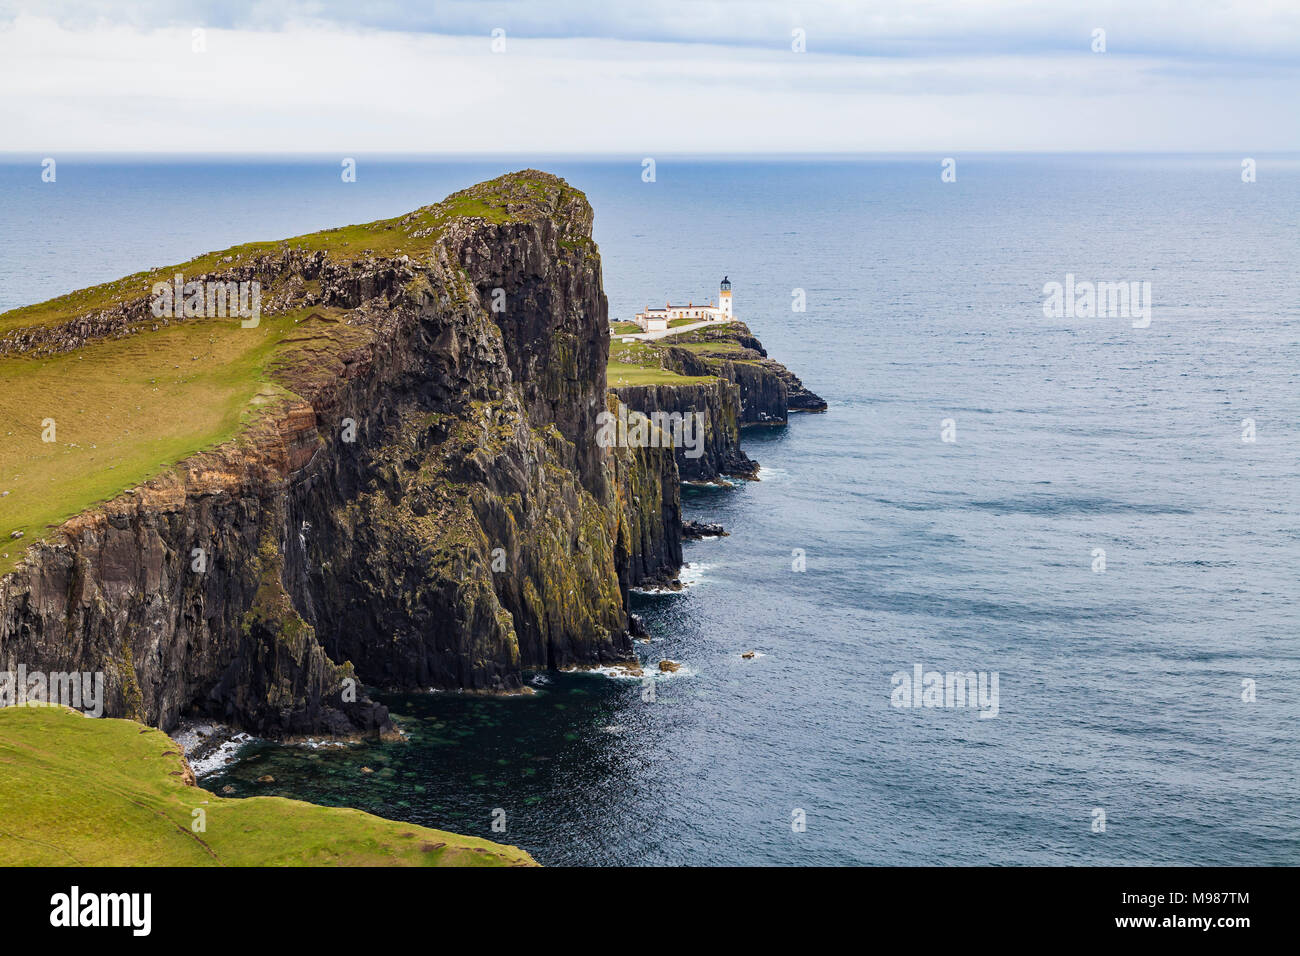 Schottland, Innere Hebriden, Skye, Insel, Isla de Skye, Neist Point, Leuchtturm, Meer Foto de stock